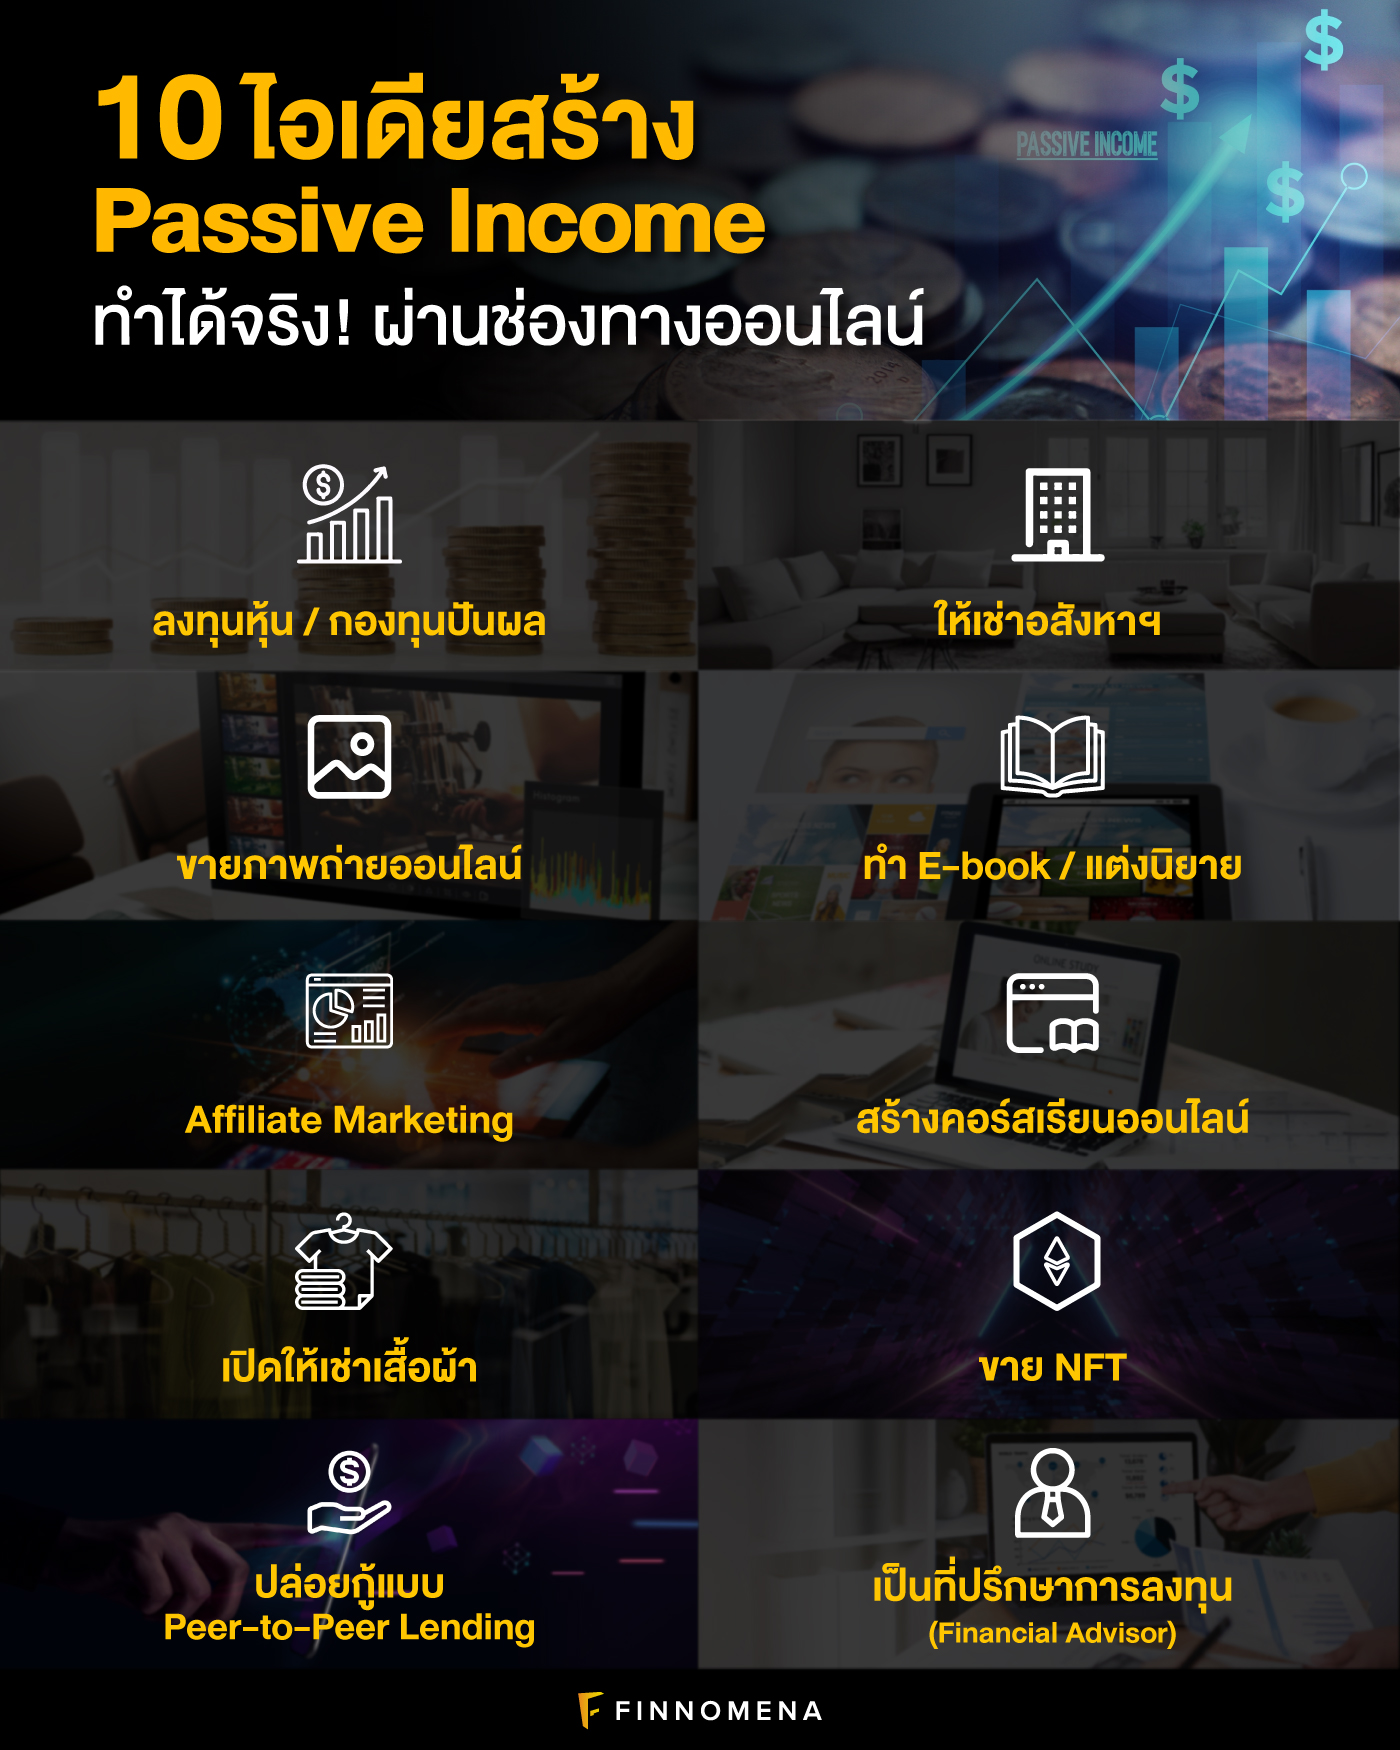 10 ไอเดียสร้าง Passive Income ทำได้จริง! ผ่านช่องทางออนไลน์